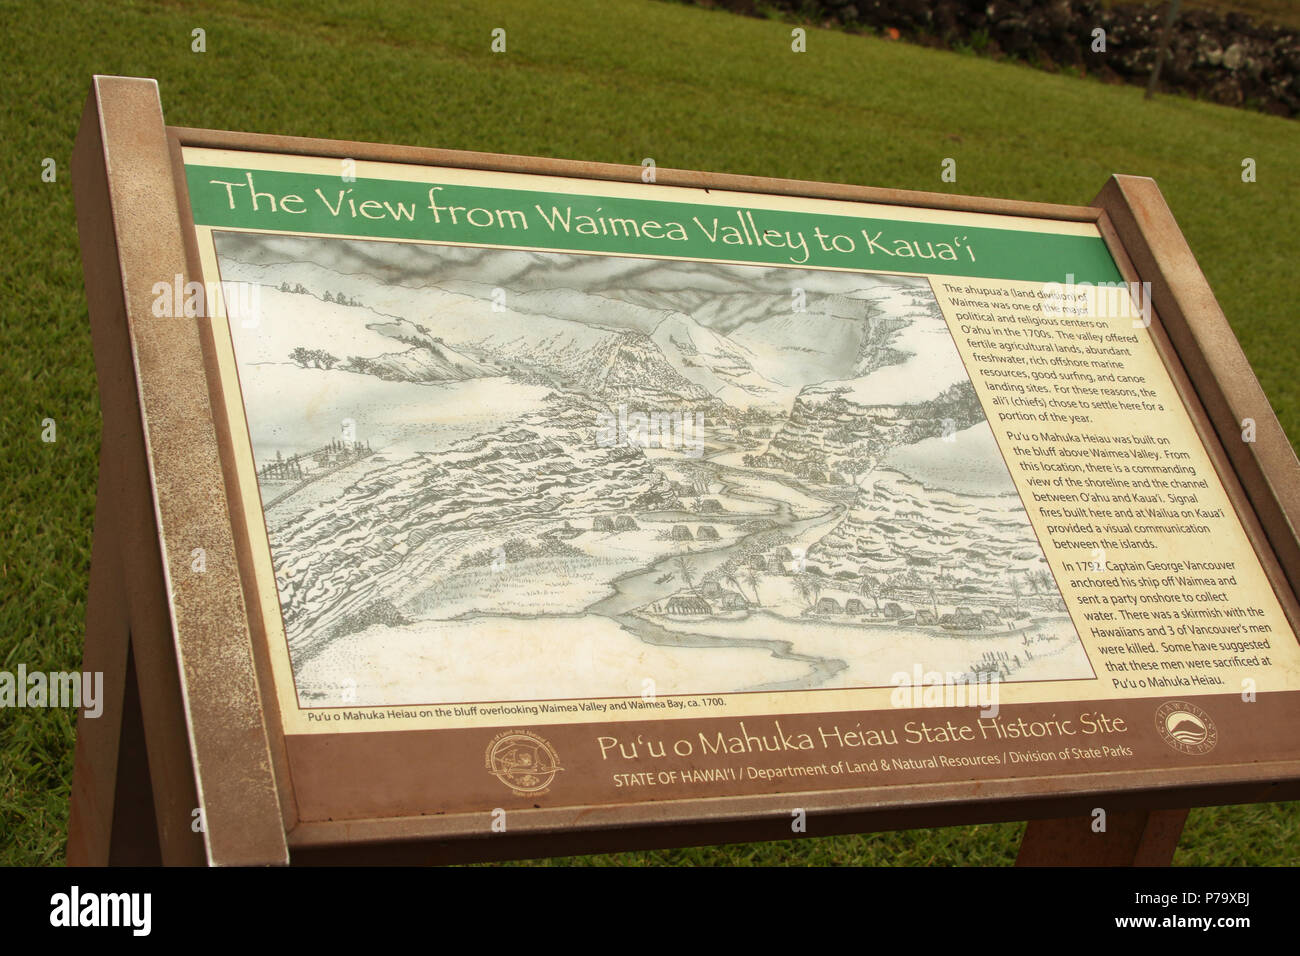 Unterschreiben Sie bei Puu O Mahuka Heiau State Historic Site - Die Ansicht Der Waimea Valley. Ein heiliger Ort der Götter. Ein Bluff mit Blick auf Waimea Bay und Waimea Stockfoto